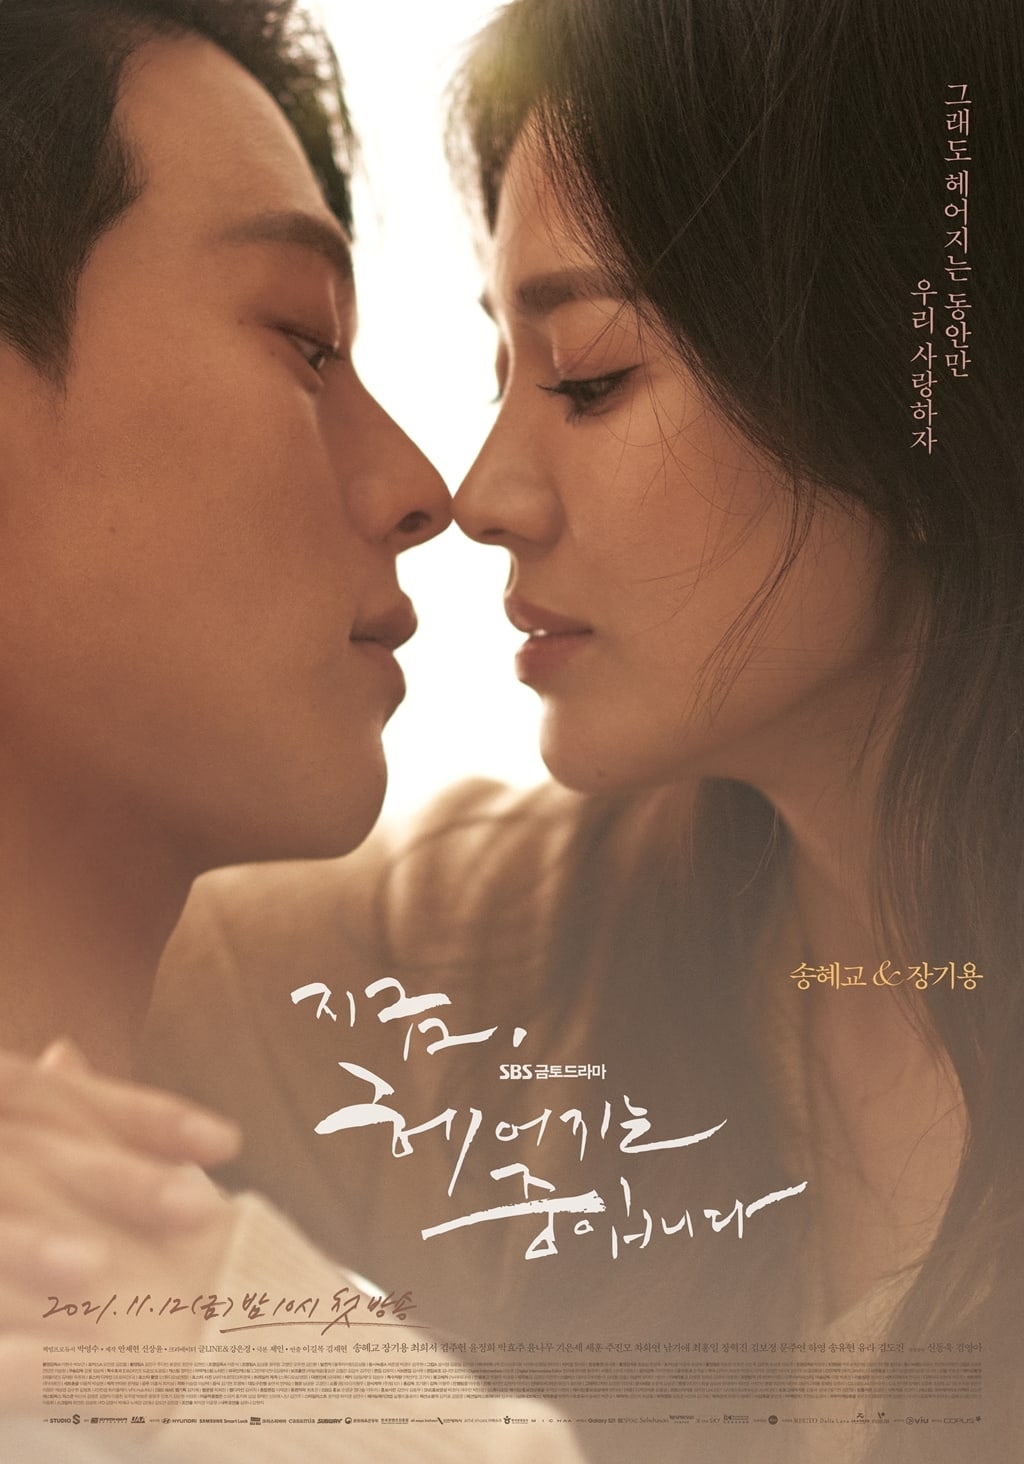 Phim mới của Song Hye Kyo ngay tập đầu đã dán nhãn 19+